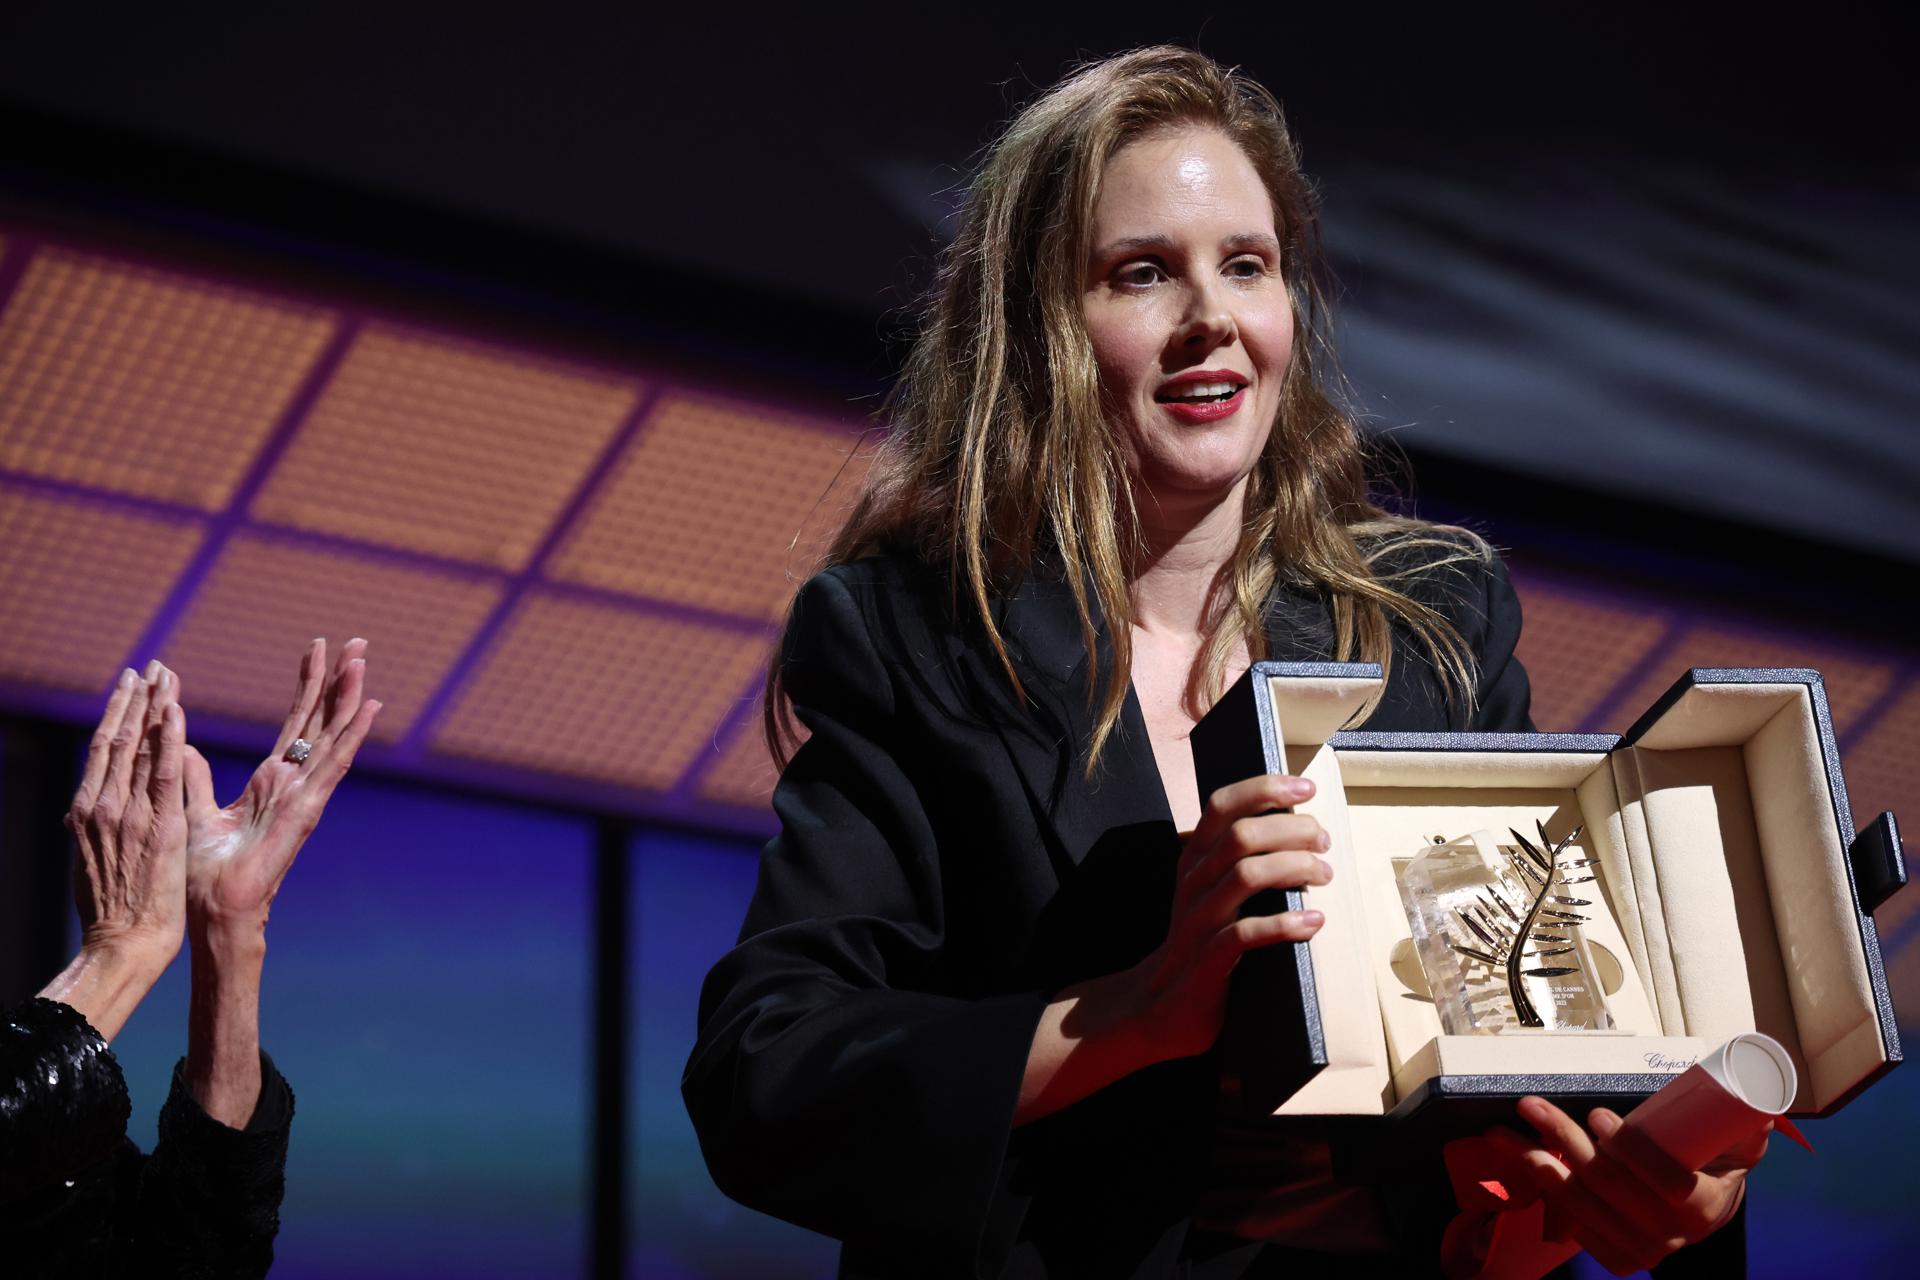 'Anatomía de una caída', de la francesa Justine Triet, se lleva la Palma de Oro de Cannes